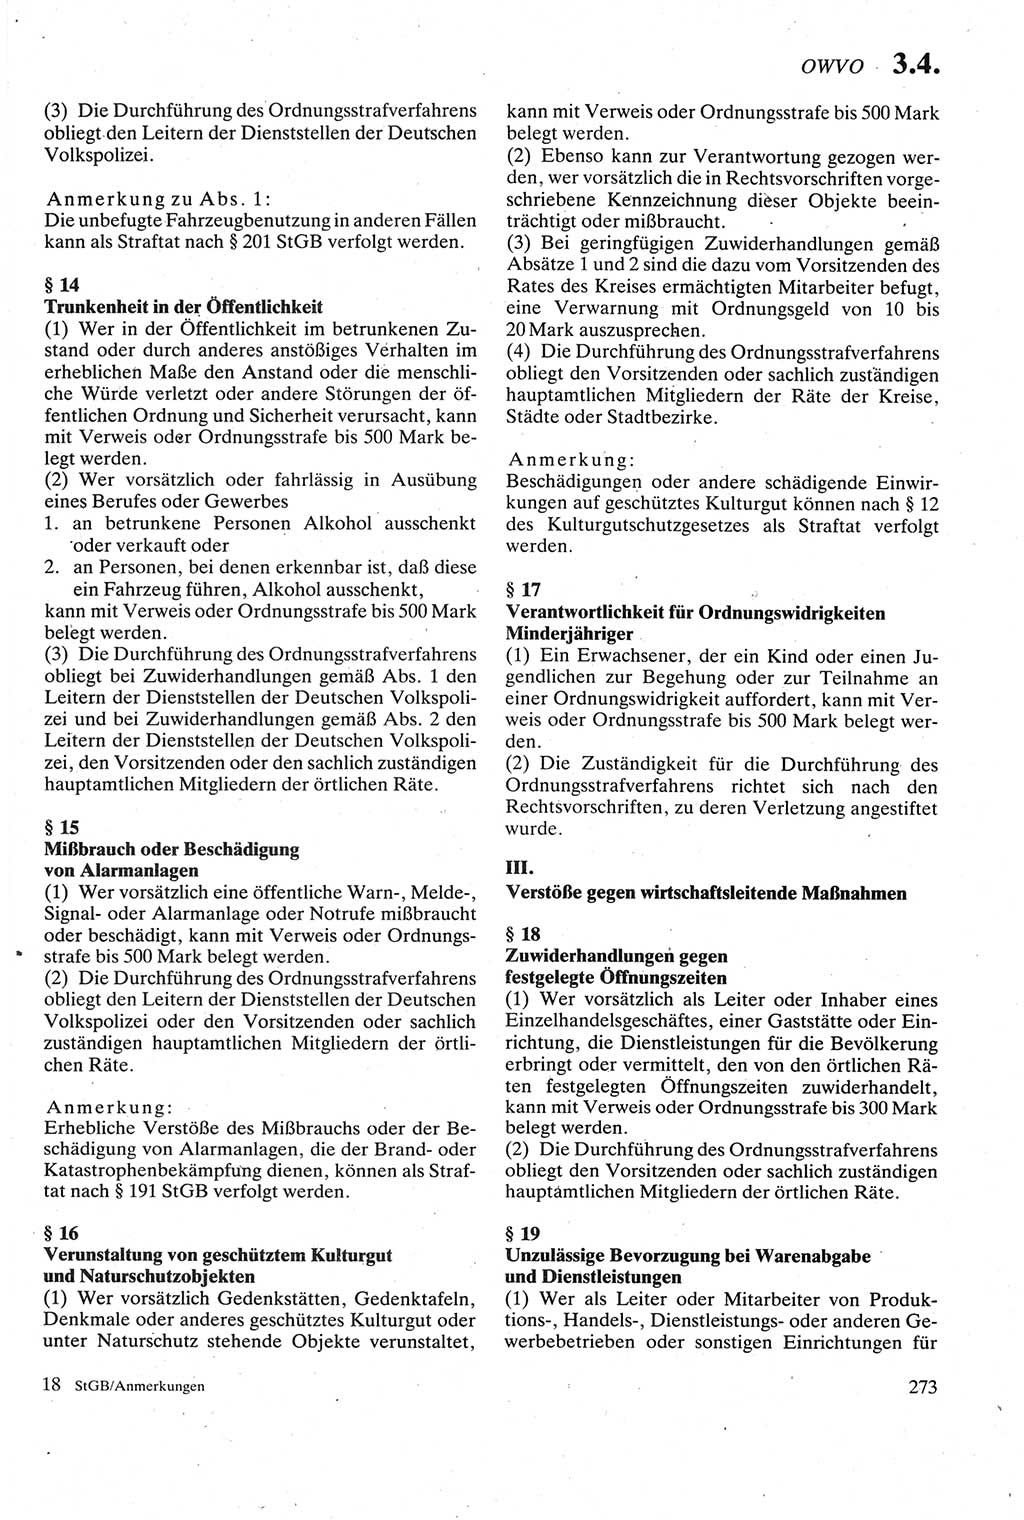 Strafgesetzbuch (StGB) der Deutschen Demokratischen Republik (DDR) sowie angrenzende Gesetze und Bestimmungen 1979, Seite 273 (StGB DDR Ges. Best. 1979, S. 273)